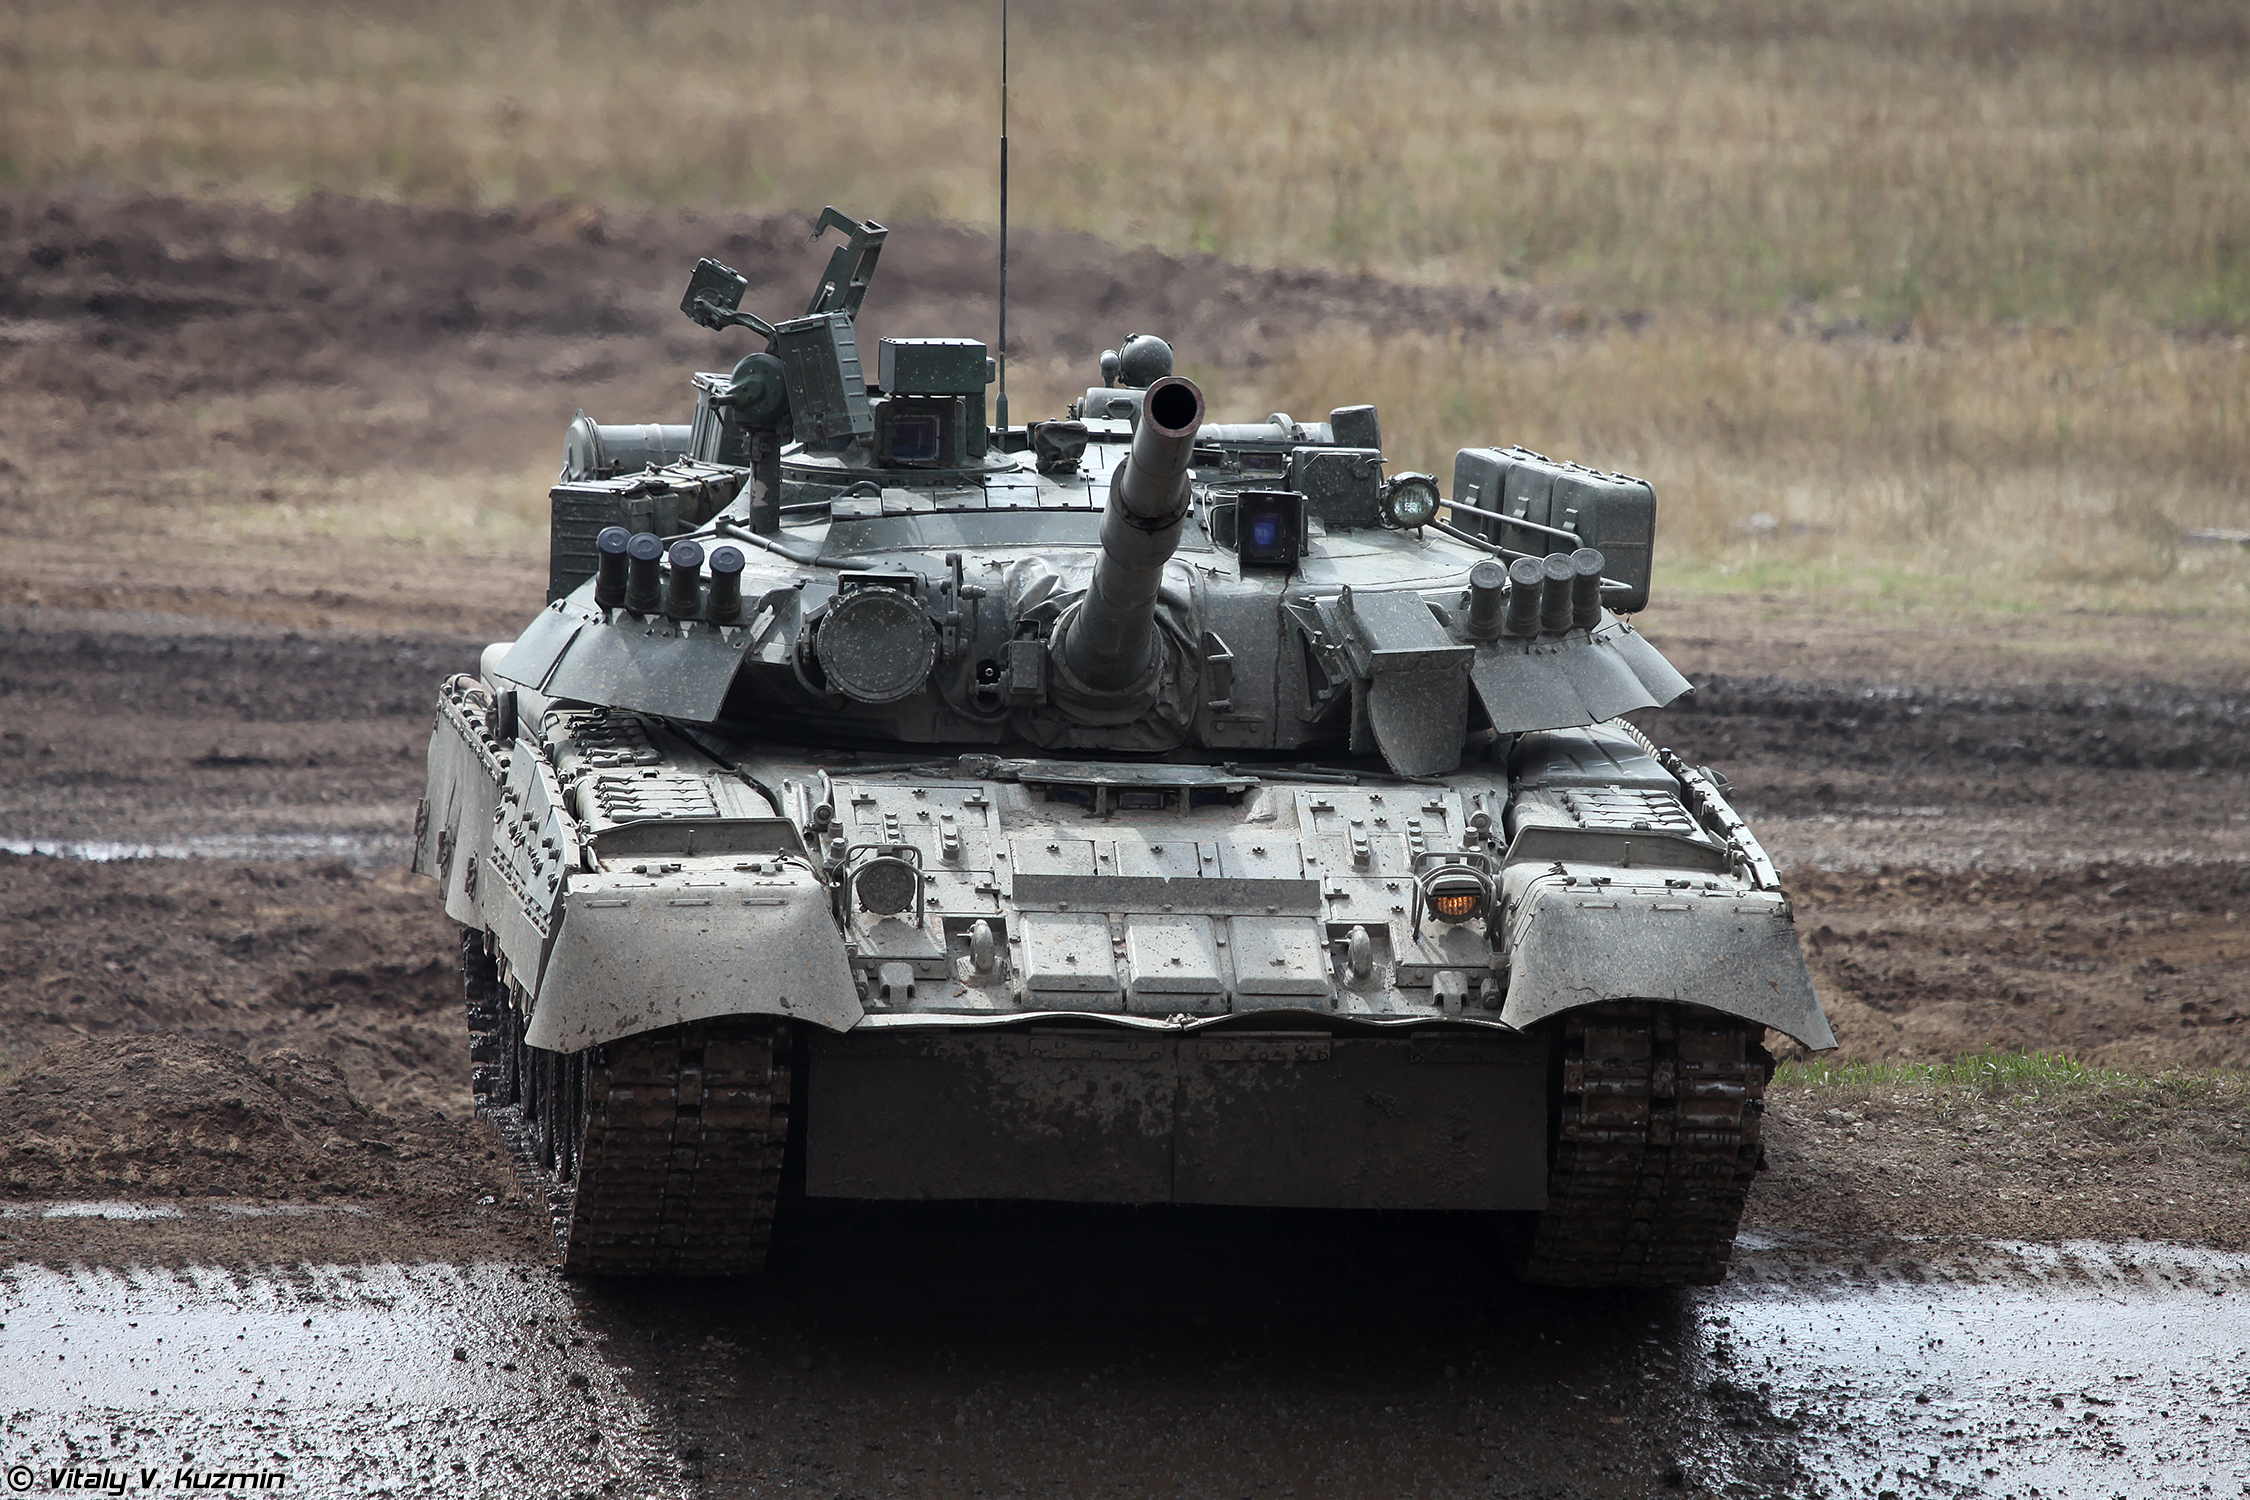 Το Πακιστάν δίνει άρματα μάχης T-80 στην Ουκρανία – Αντιδρά η Ρωσία